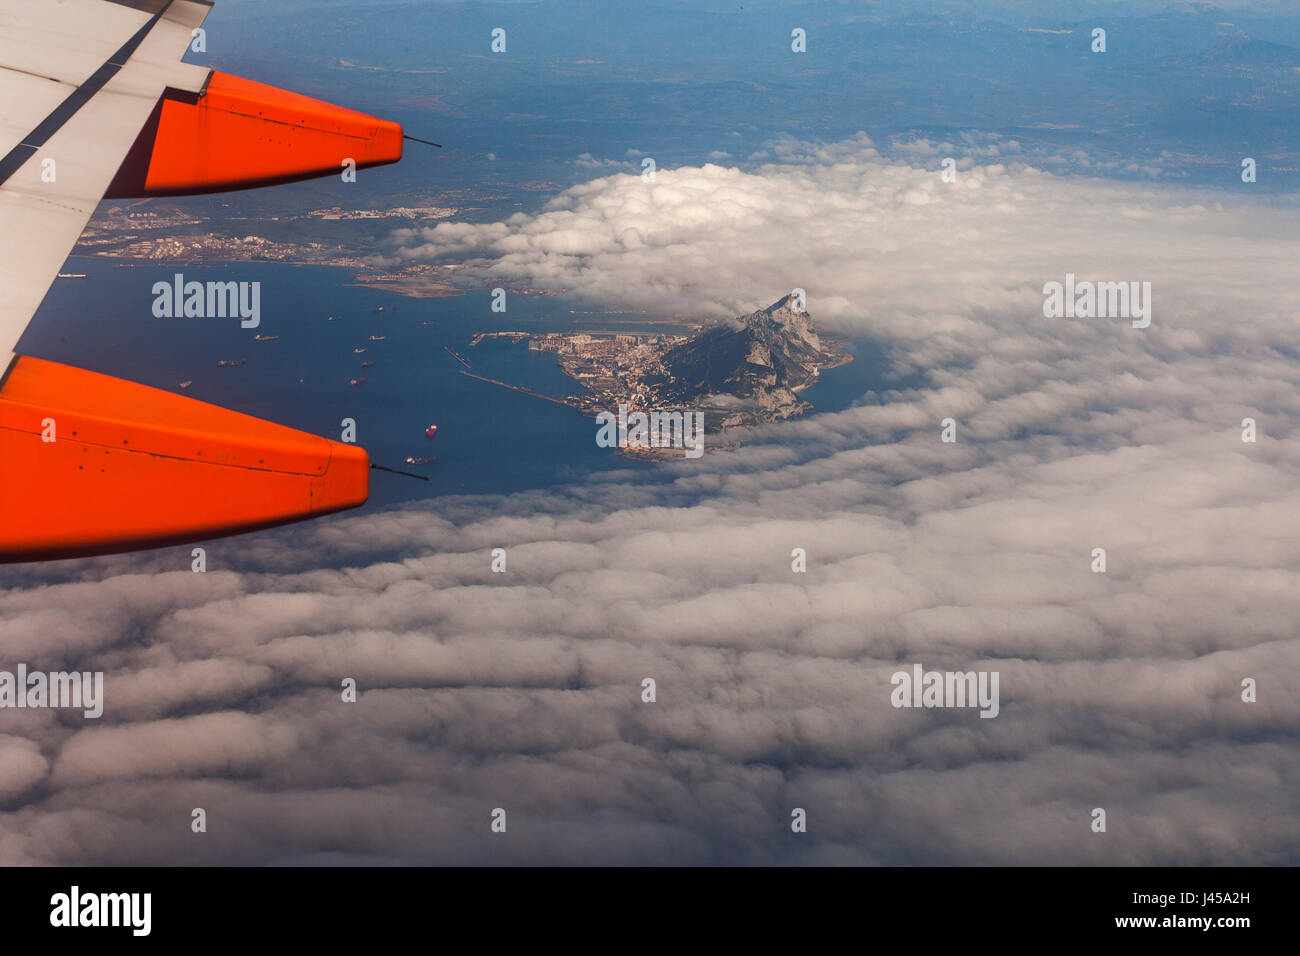 Une vue aérienne du rocher de Gibraltar poussant hors de vol à basse altitude des nuages en vu d'un avion Easy Jet siège fenêtre sur sa façon de Tanger. Banque D'Images